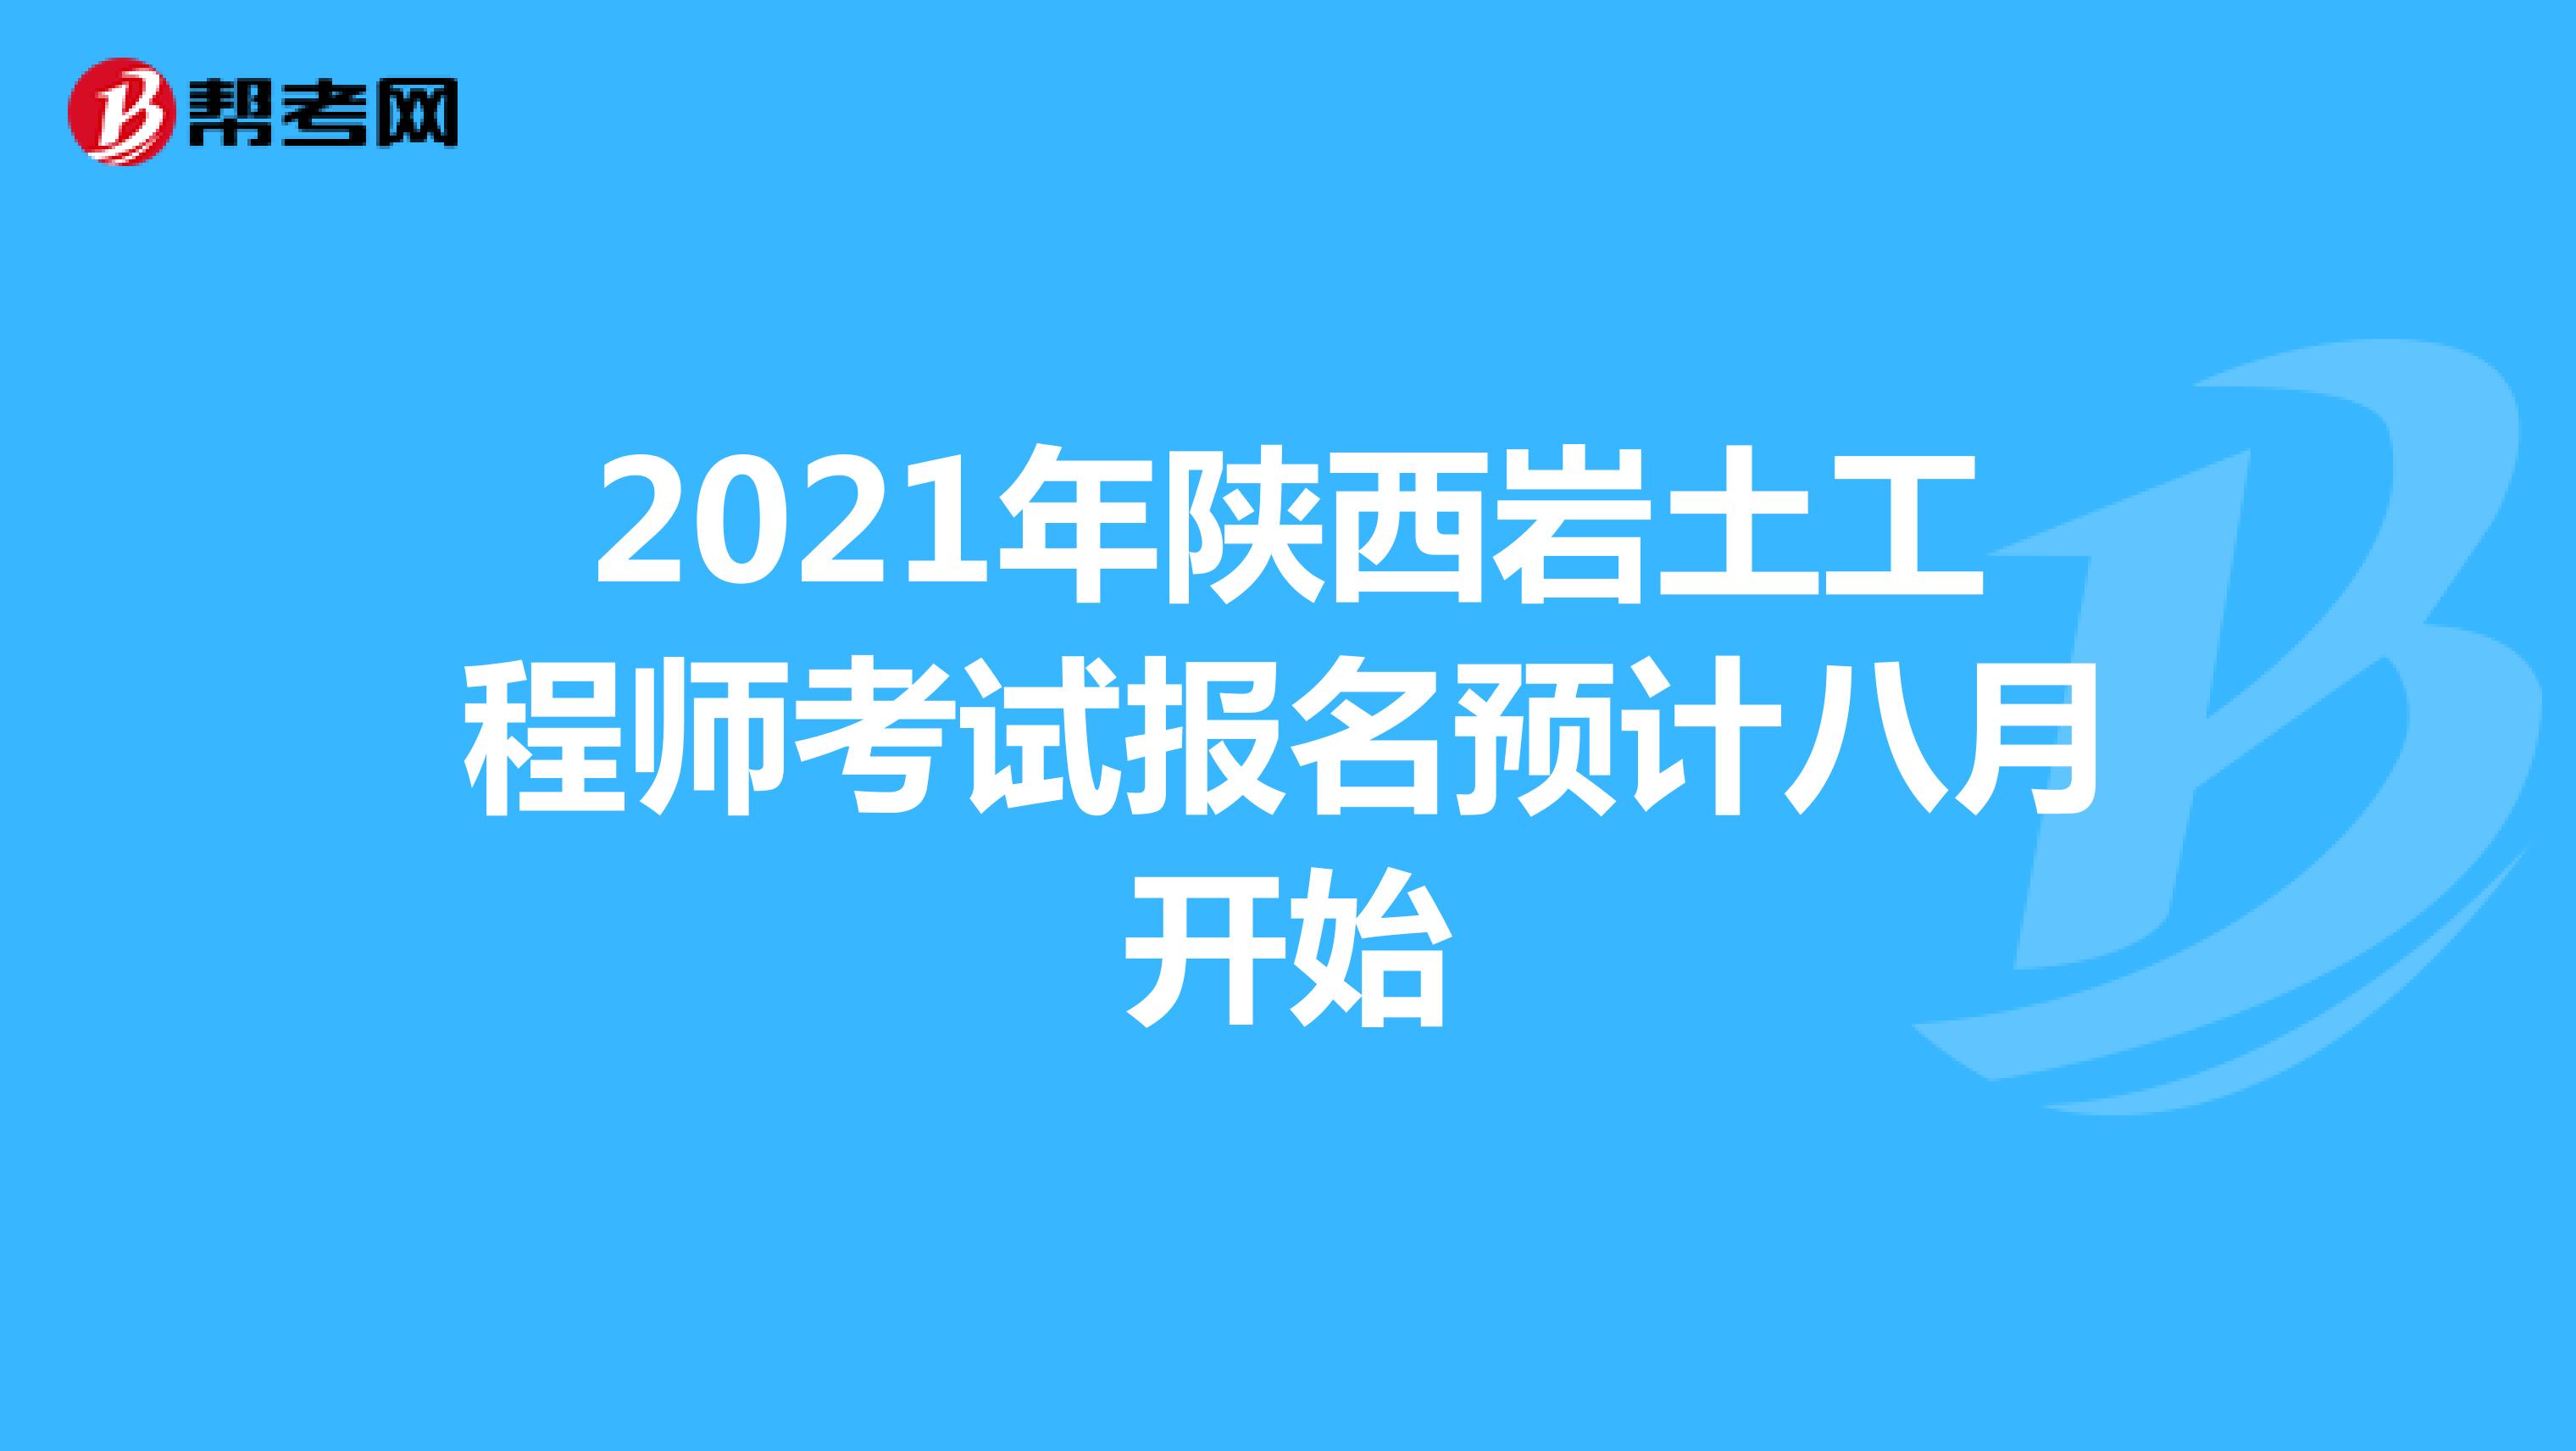 2021年陕西岩土工程师考试报名预计八月开始